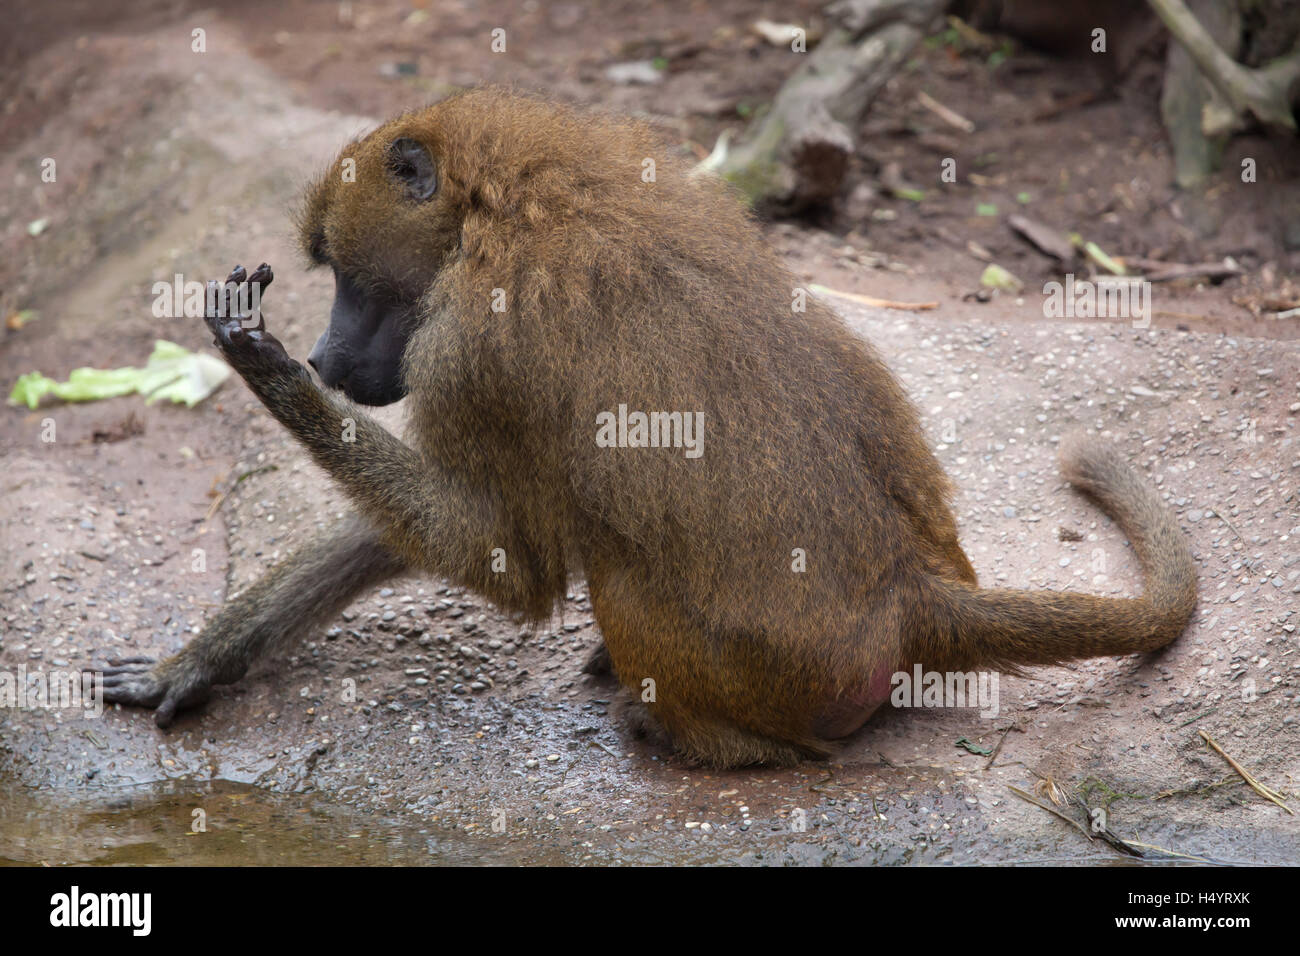 Guinea baboon (Papio papio). Wildlife animal. Stock Photo